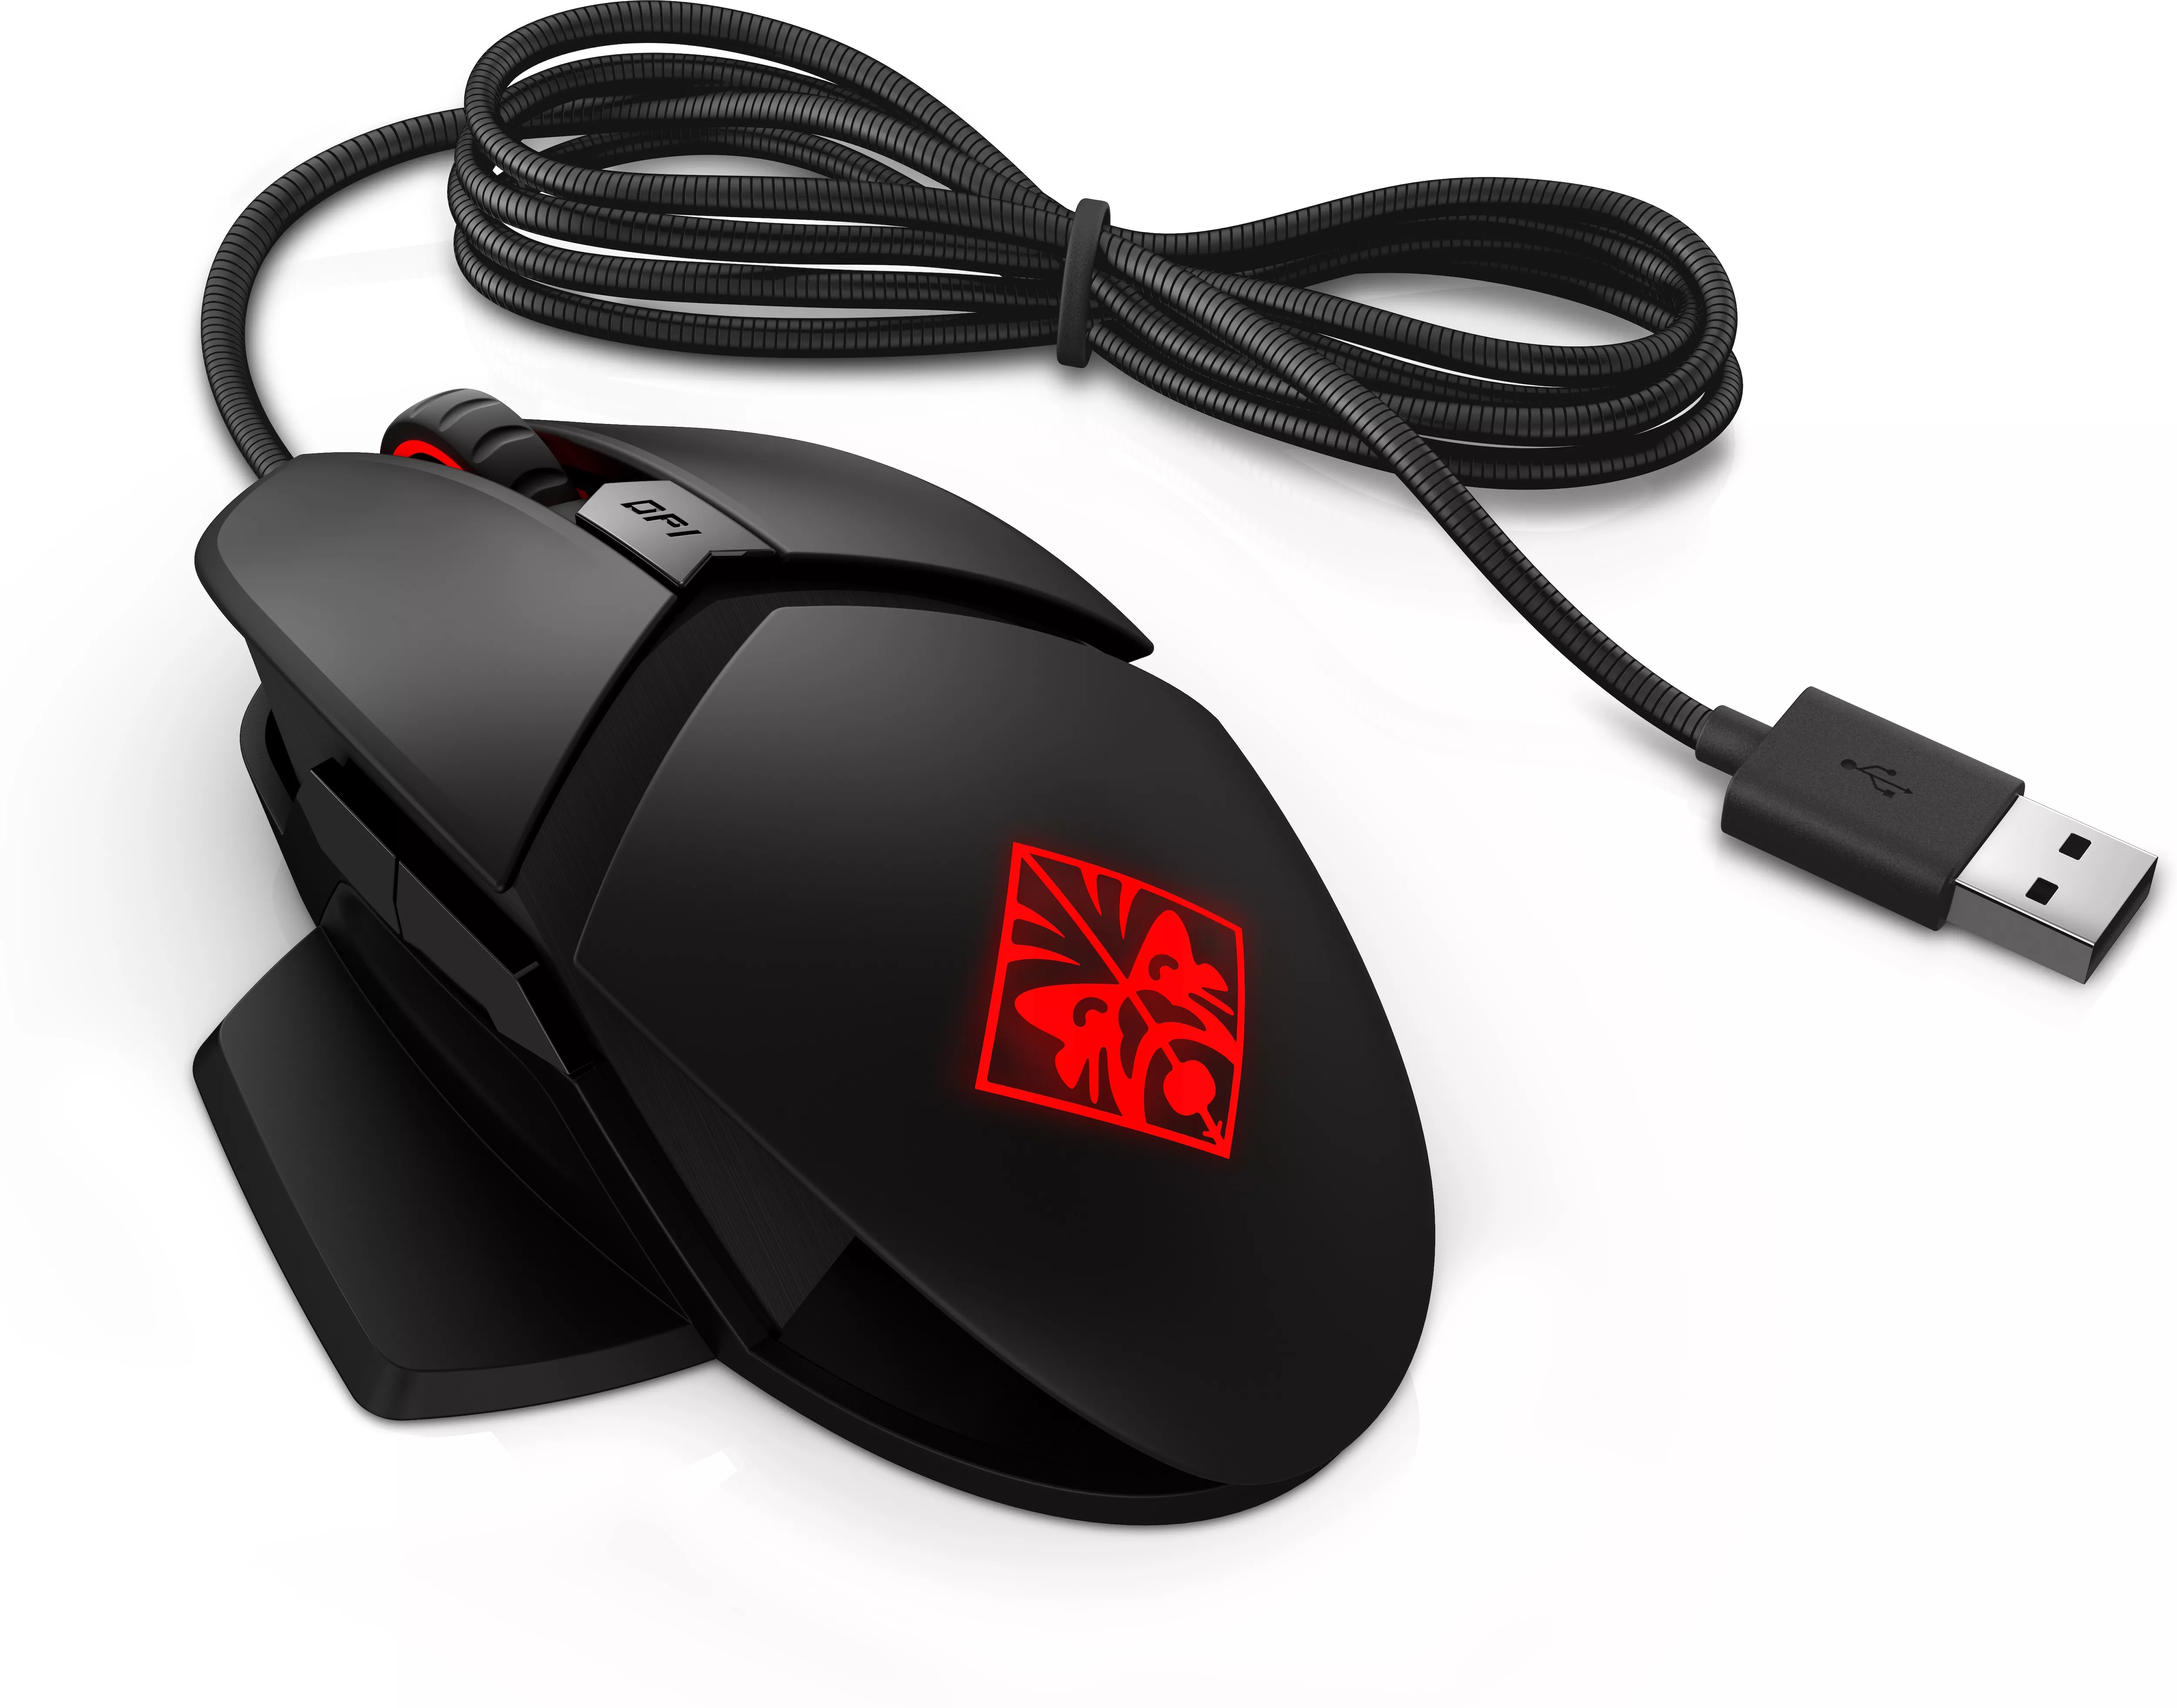 Vente HP OMEN Reactor Mouse Europe HP au meilleur prix - visuel 2